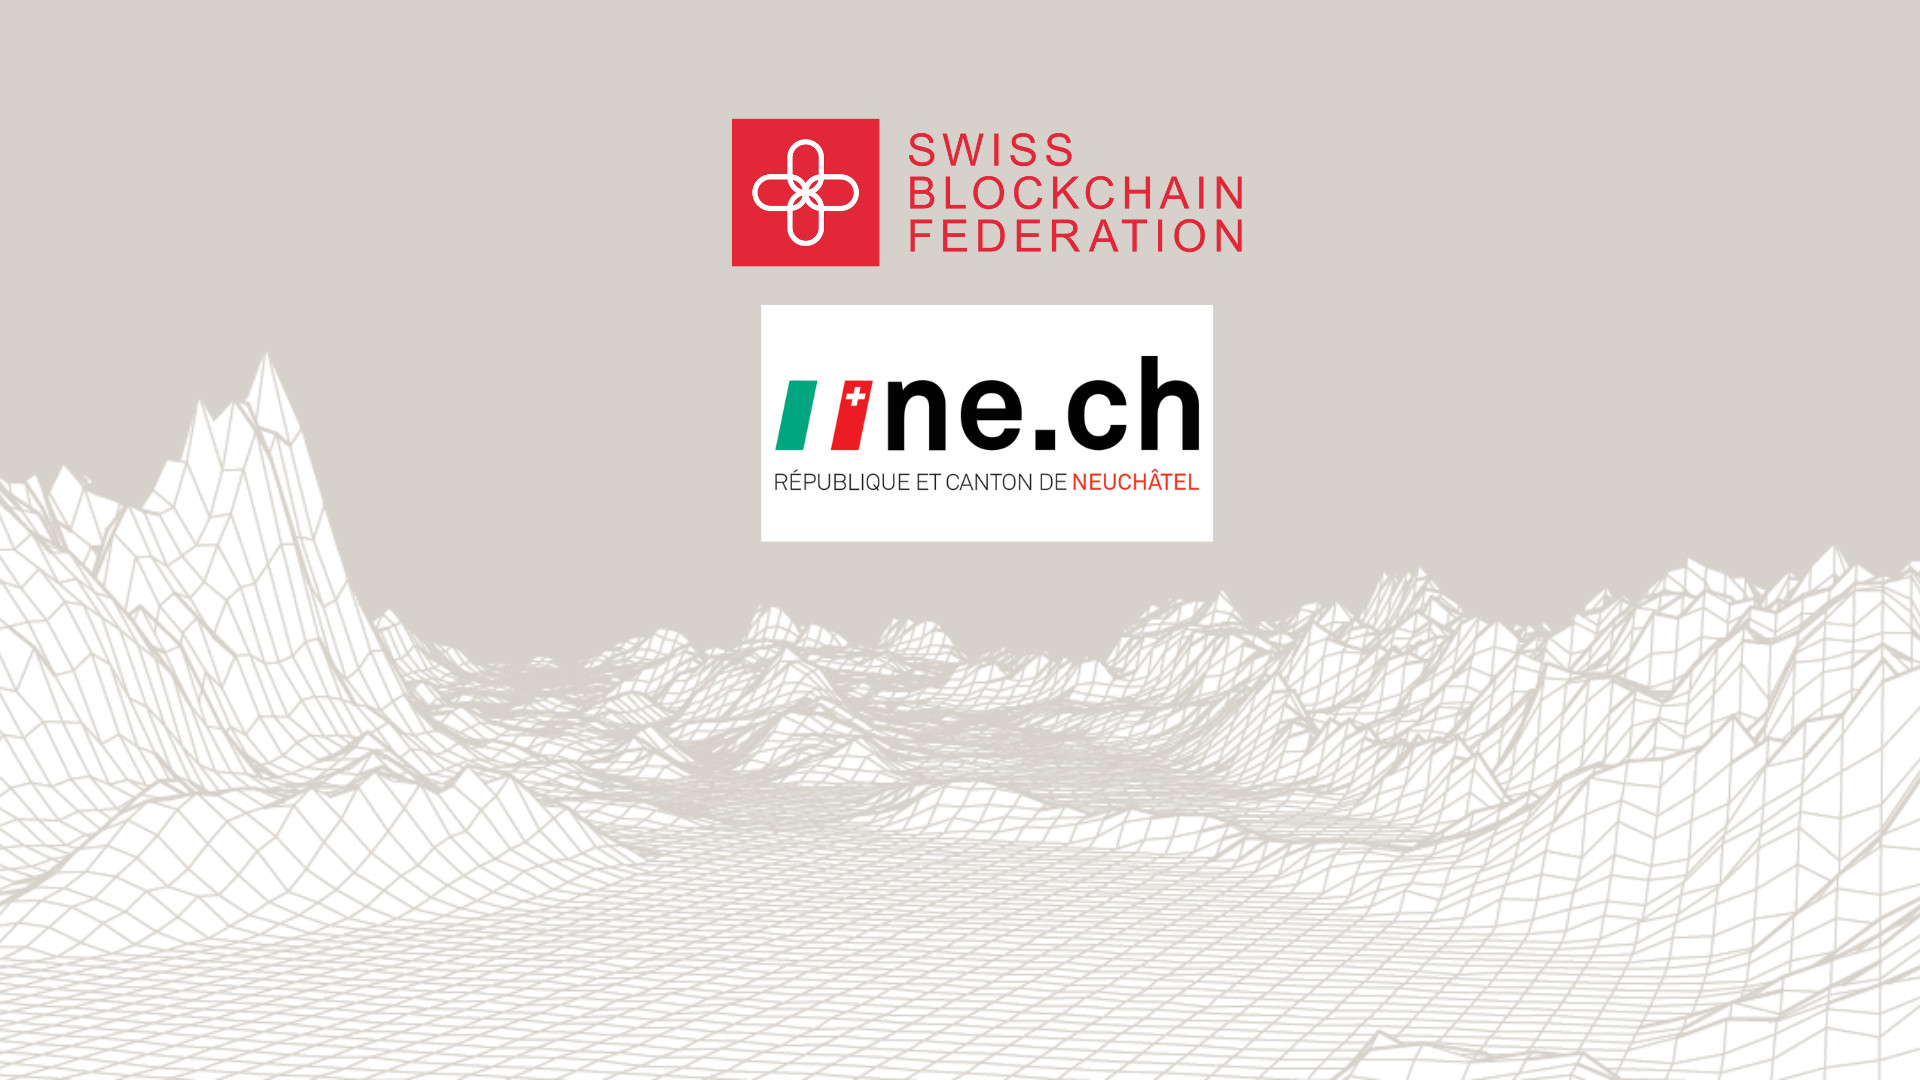 Der Kanton Neuenburg, ein wichtiger Akteur in der Schweizer Blockchain-Industrie, ist seit diesem Jahr Mitglied der Swiss Blockchain Federation.